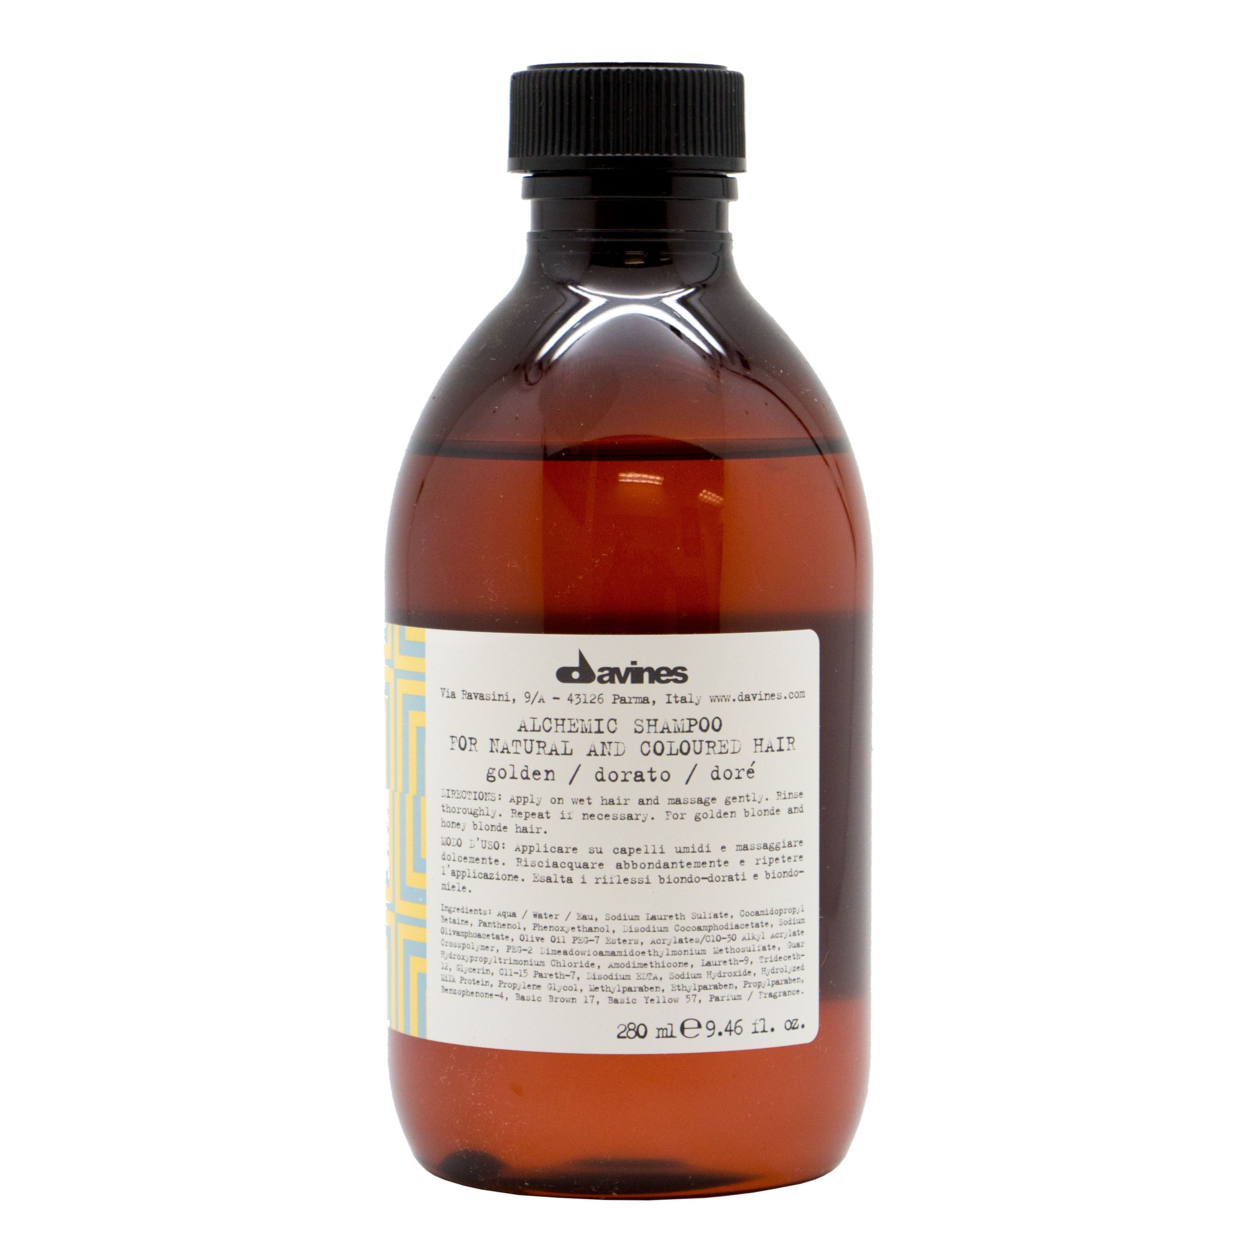 Davines Alchemic Golden Shampoo 280ml/9.46oz